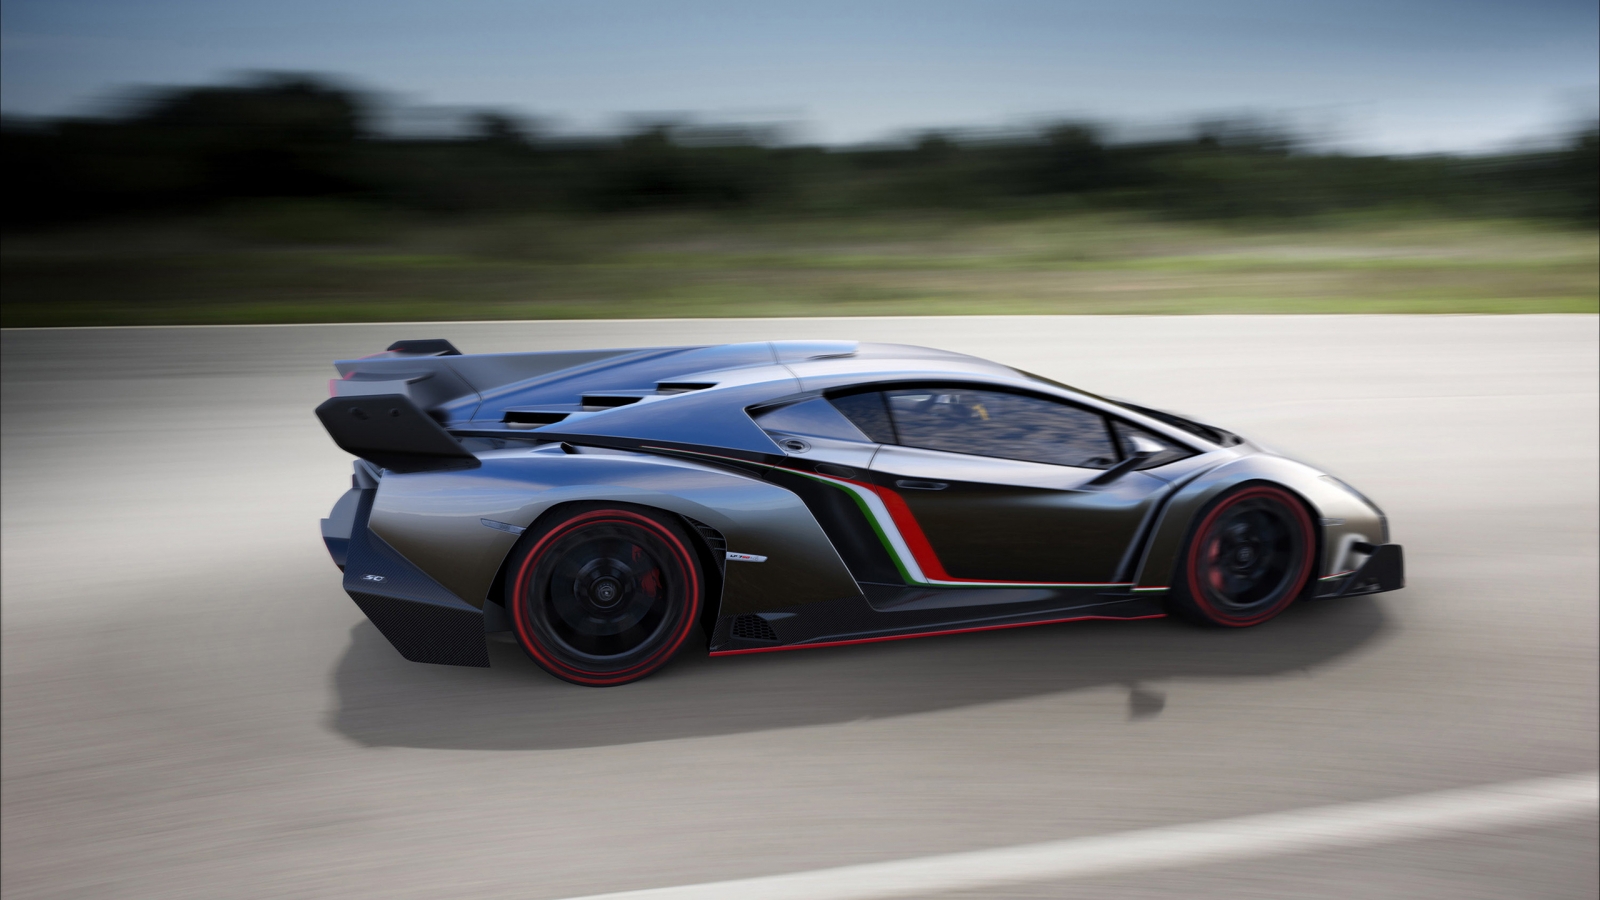 Lamborghini Veneno Speed for 1600 x 900 HDTV resolution